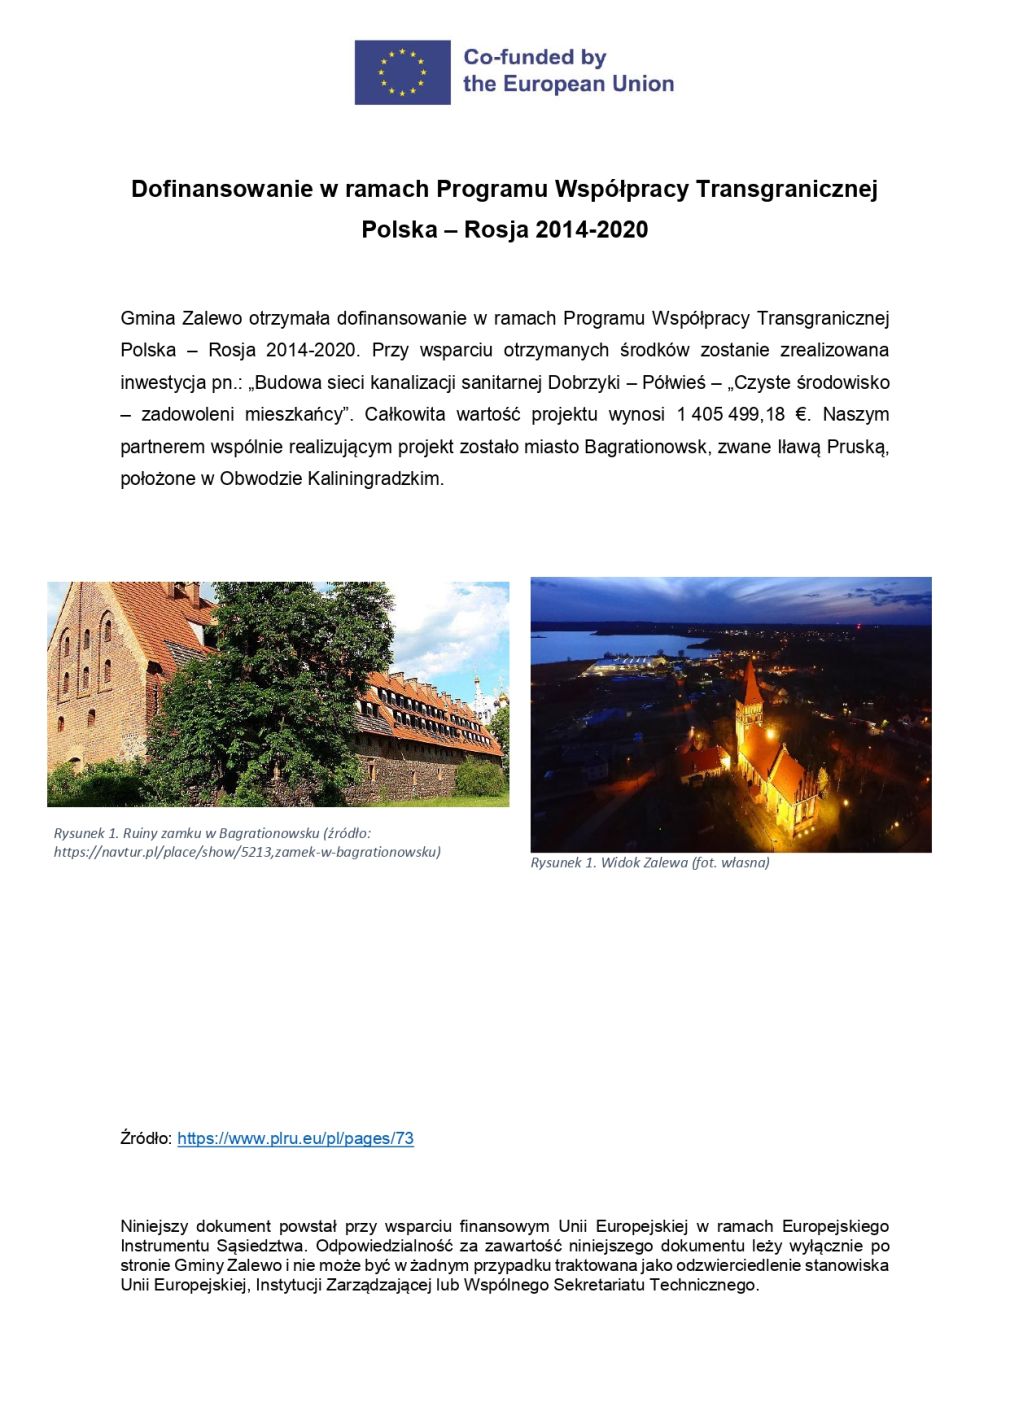 Dofinansowanie w ramach Programu Współpracy Transgranicznej Polska - Rosja 2014-2020